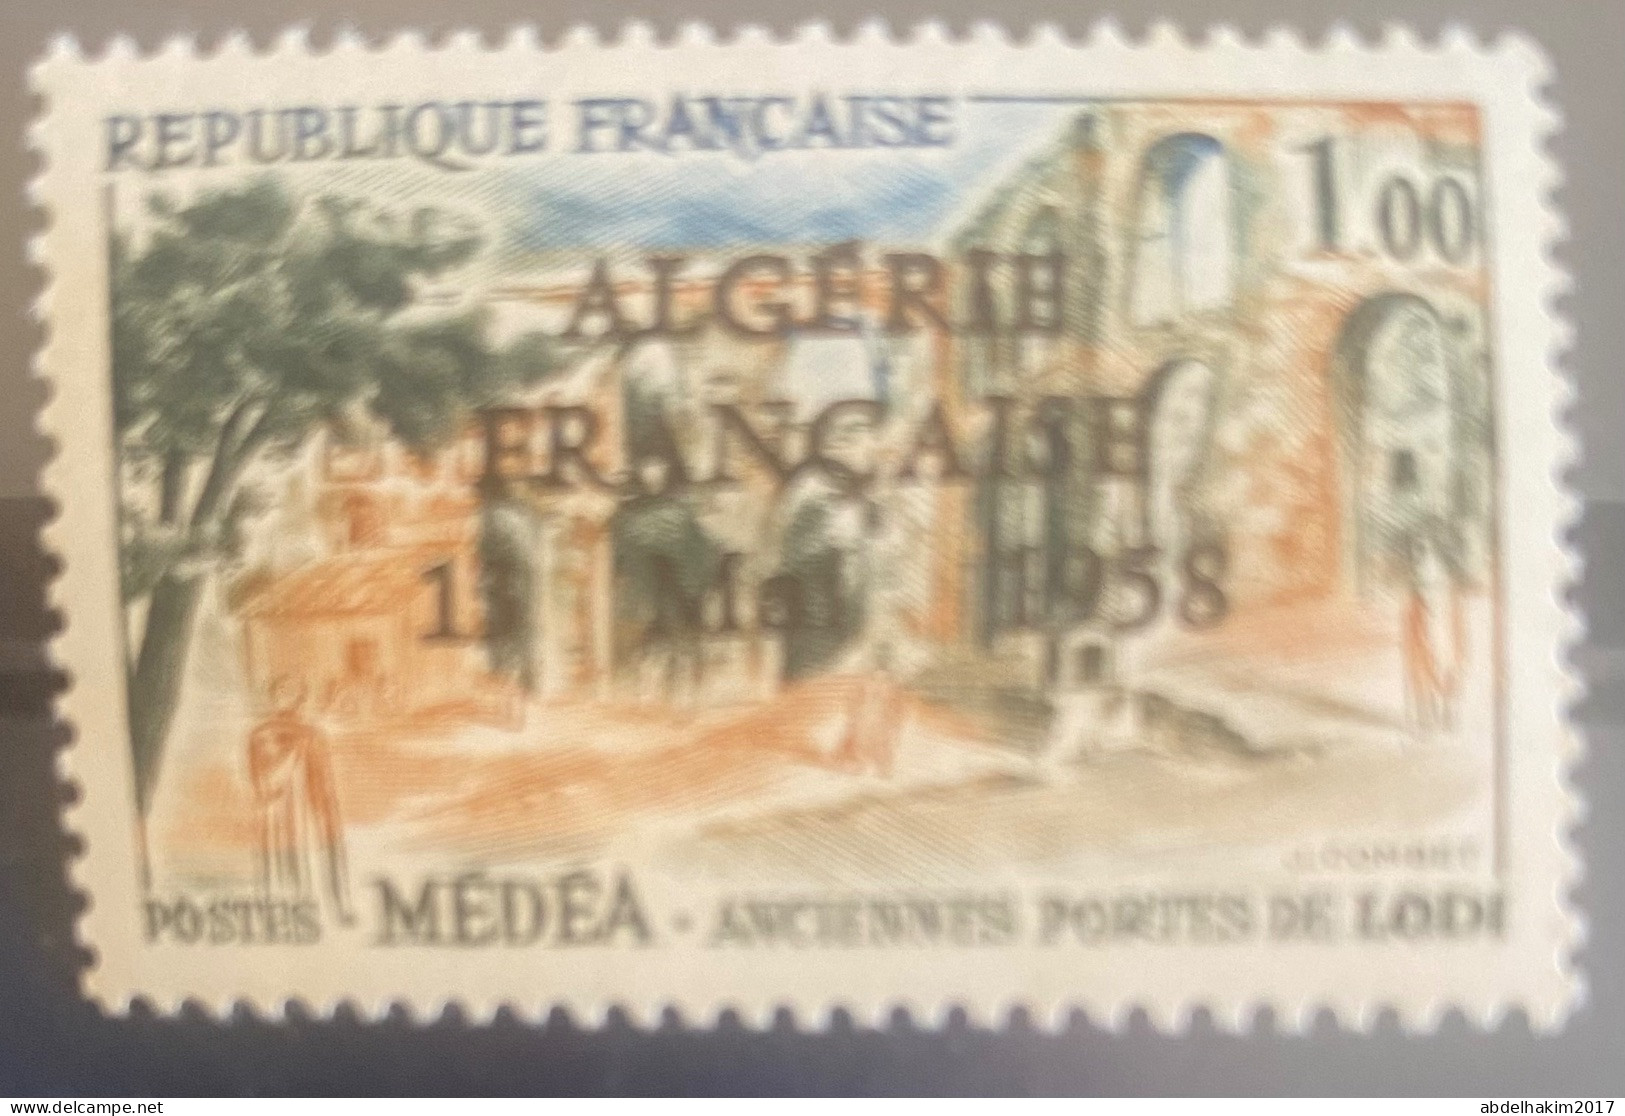 Algerie/Algeria Timbre De France Surchargé Algerie Française 13 Mai 1958 MNH Pour L’état Voir Photos, OAS - Neufs